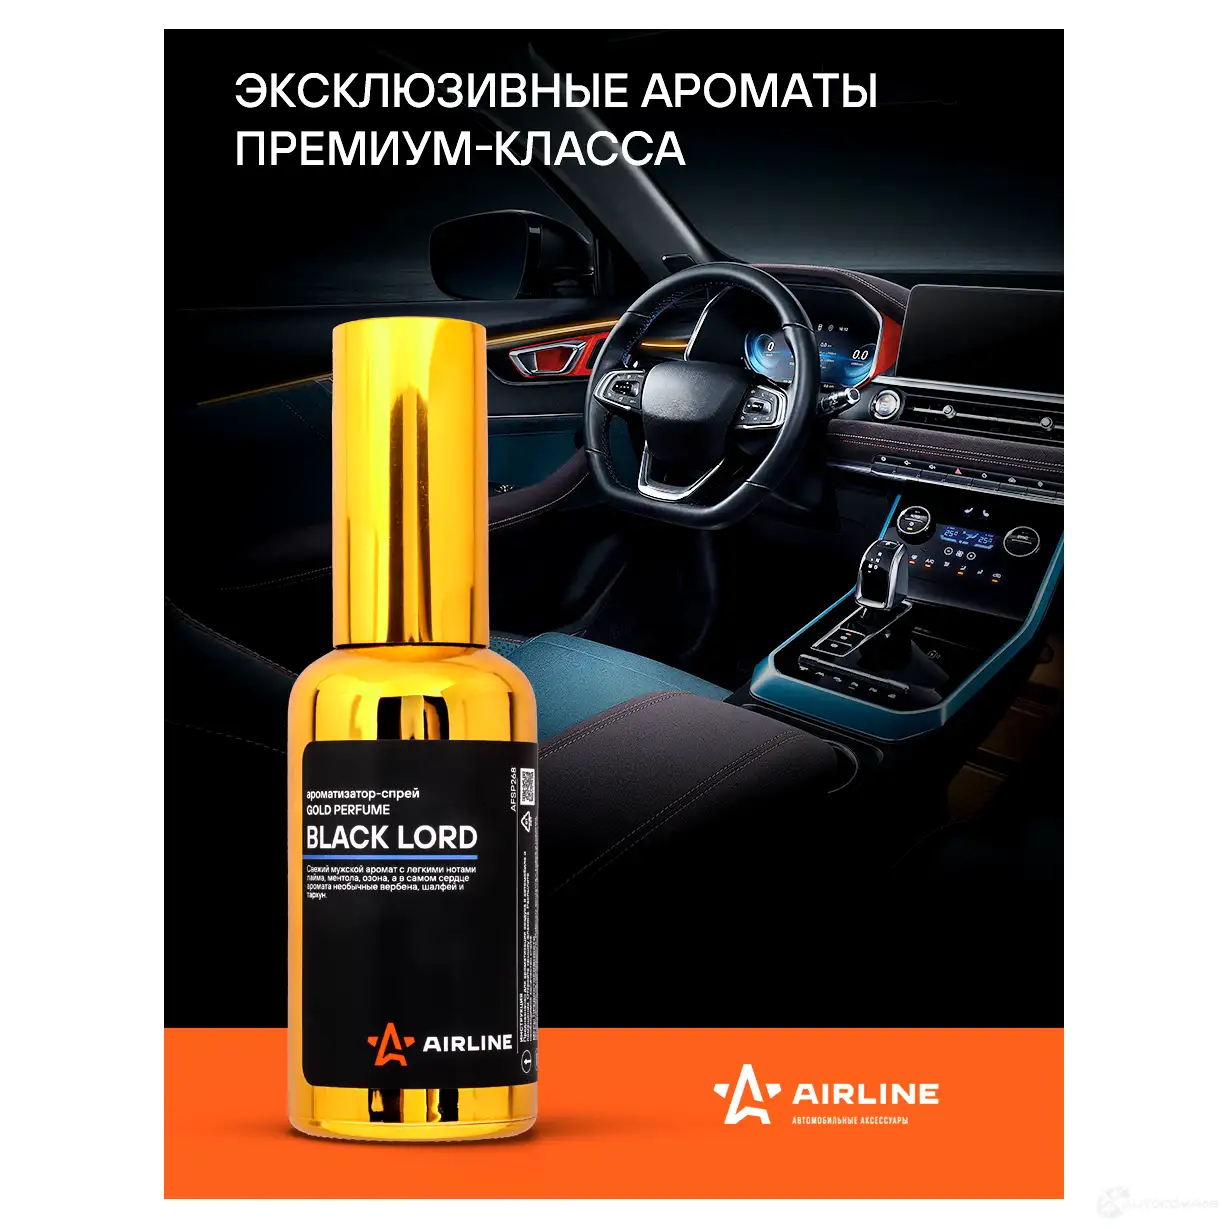 Ароматизатор-спрей GOLD Perfume BLACK LORD 50мл AIRLINE 1438171773 afsp268 T7 8TJK изображение 1